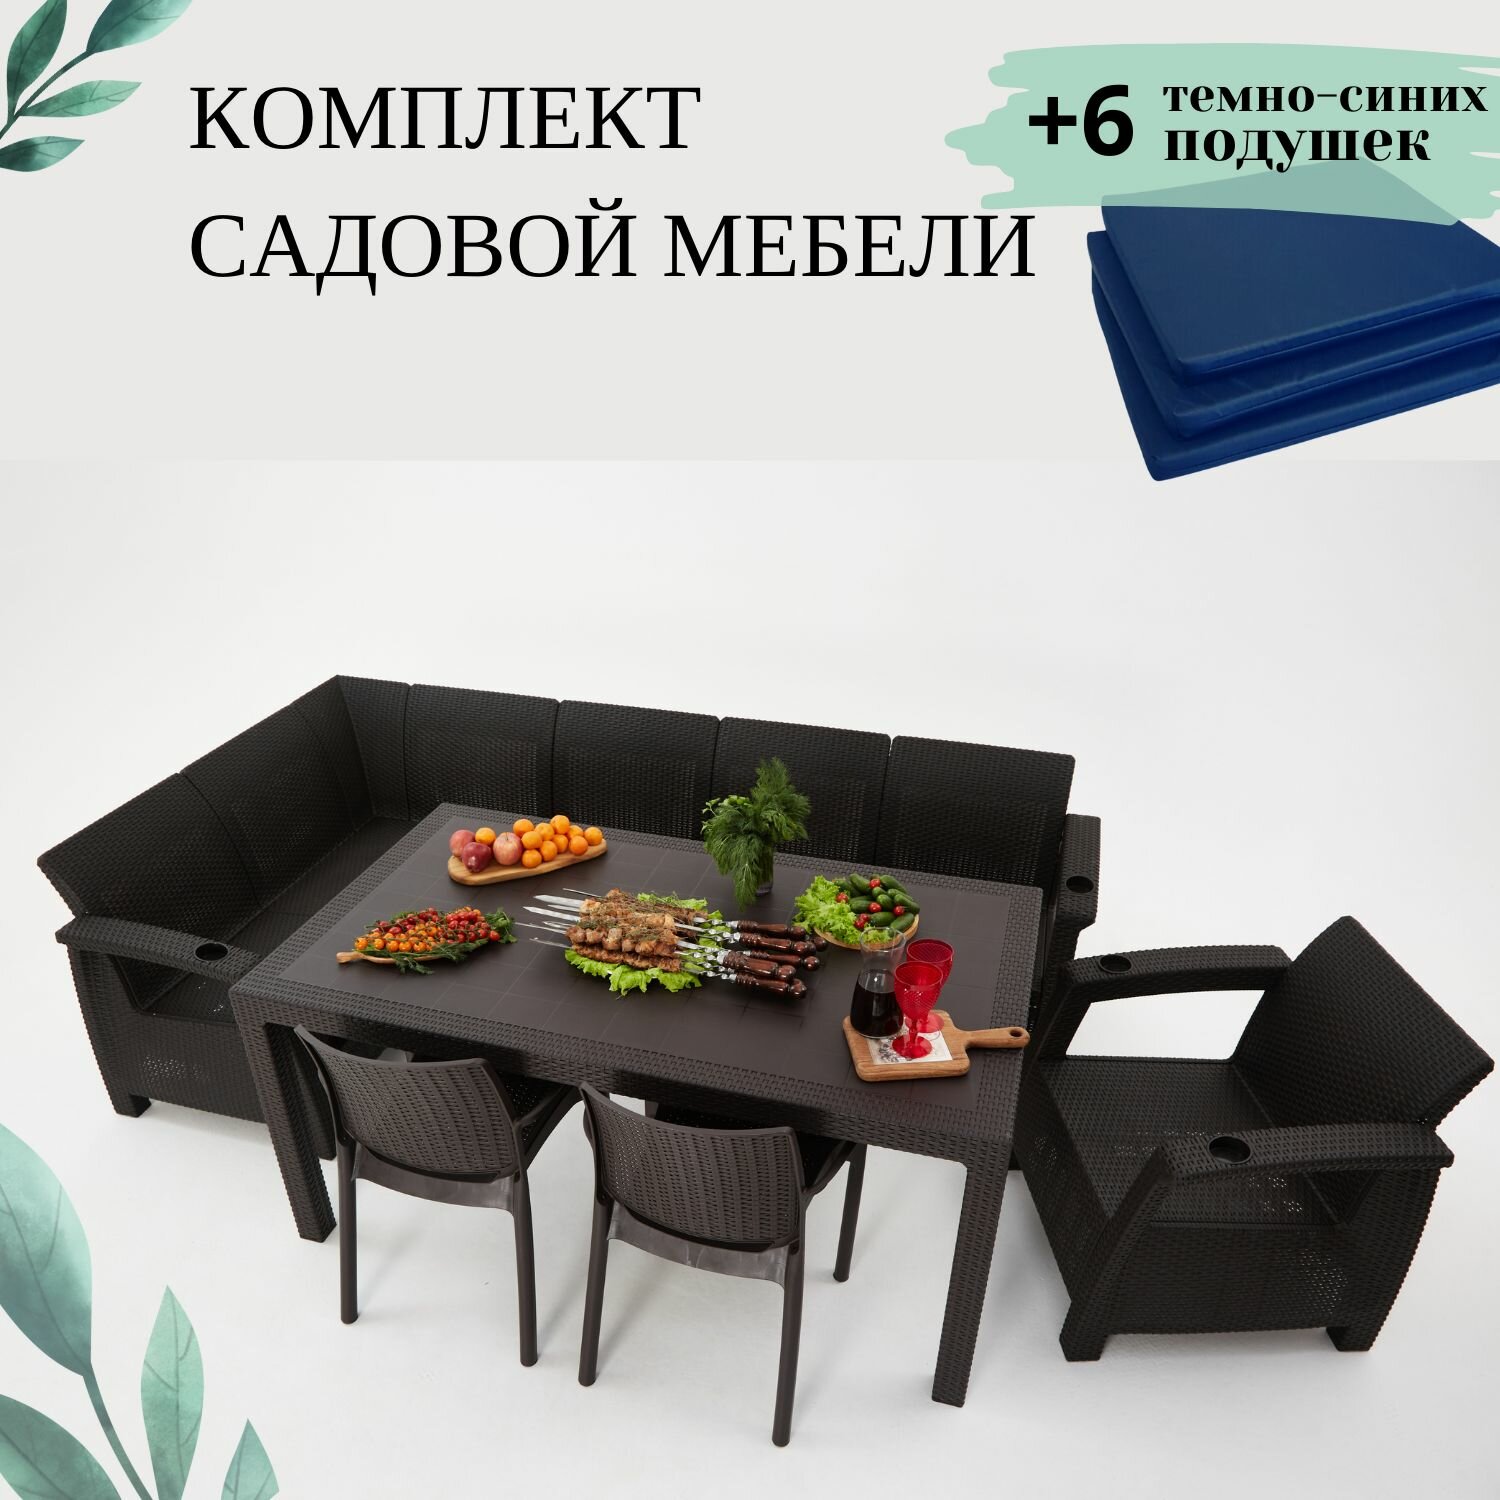 Комплект садовой мебели из ротанга Set 5+Bt+1+2ch темно-синие подушки